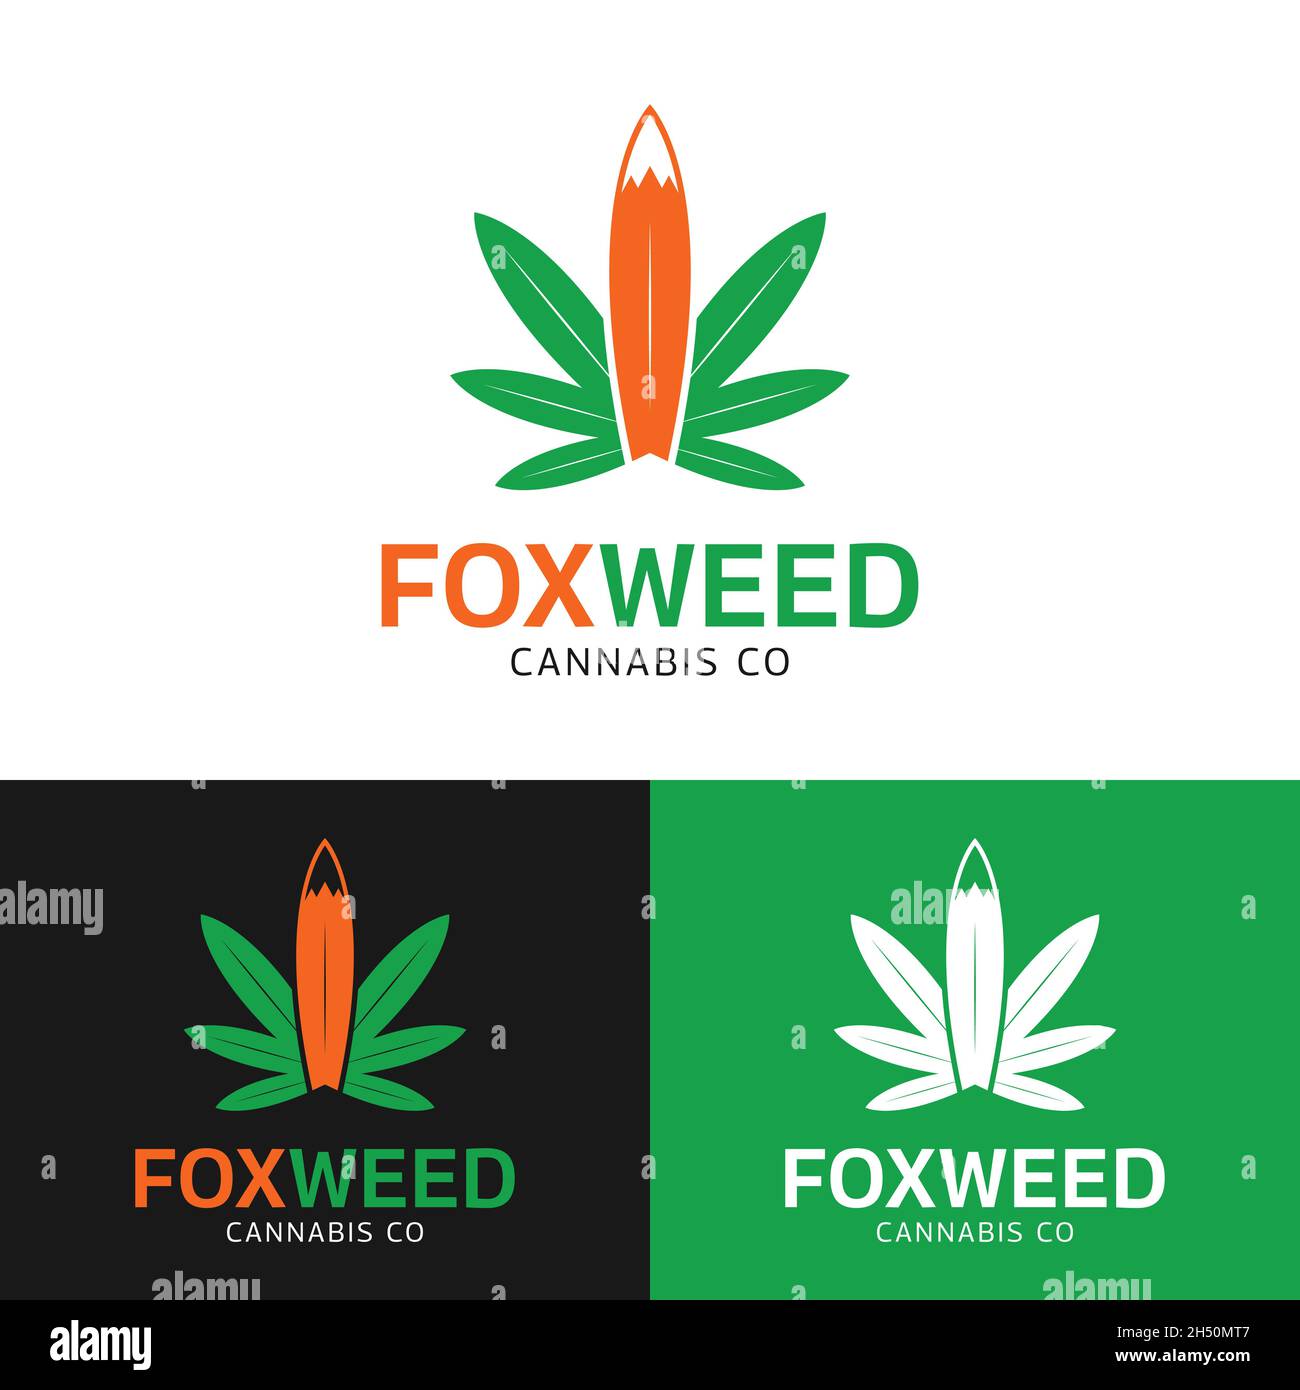 Hojas de Cannabis con plantilla de diseño de logotipo Fox Tail. Cannabis Hashish Weed Marijuana La cáñamo es una droga psicoactiva de la planta de Cannabis. Ilustración del Vector